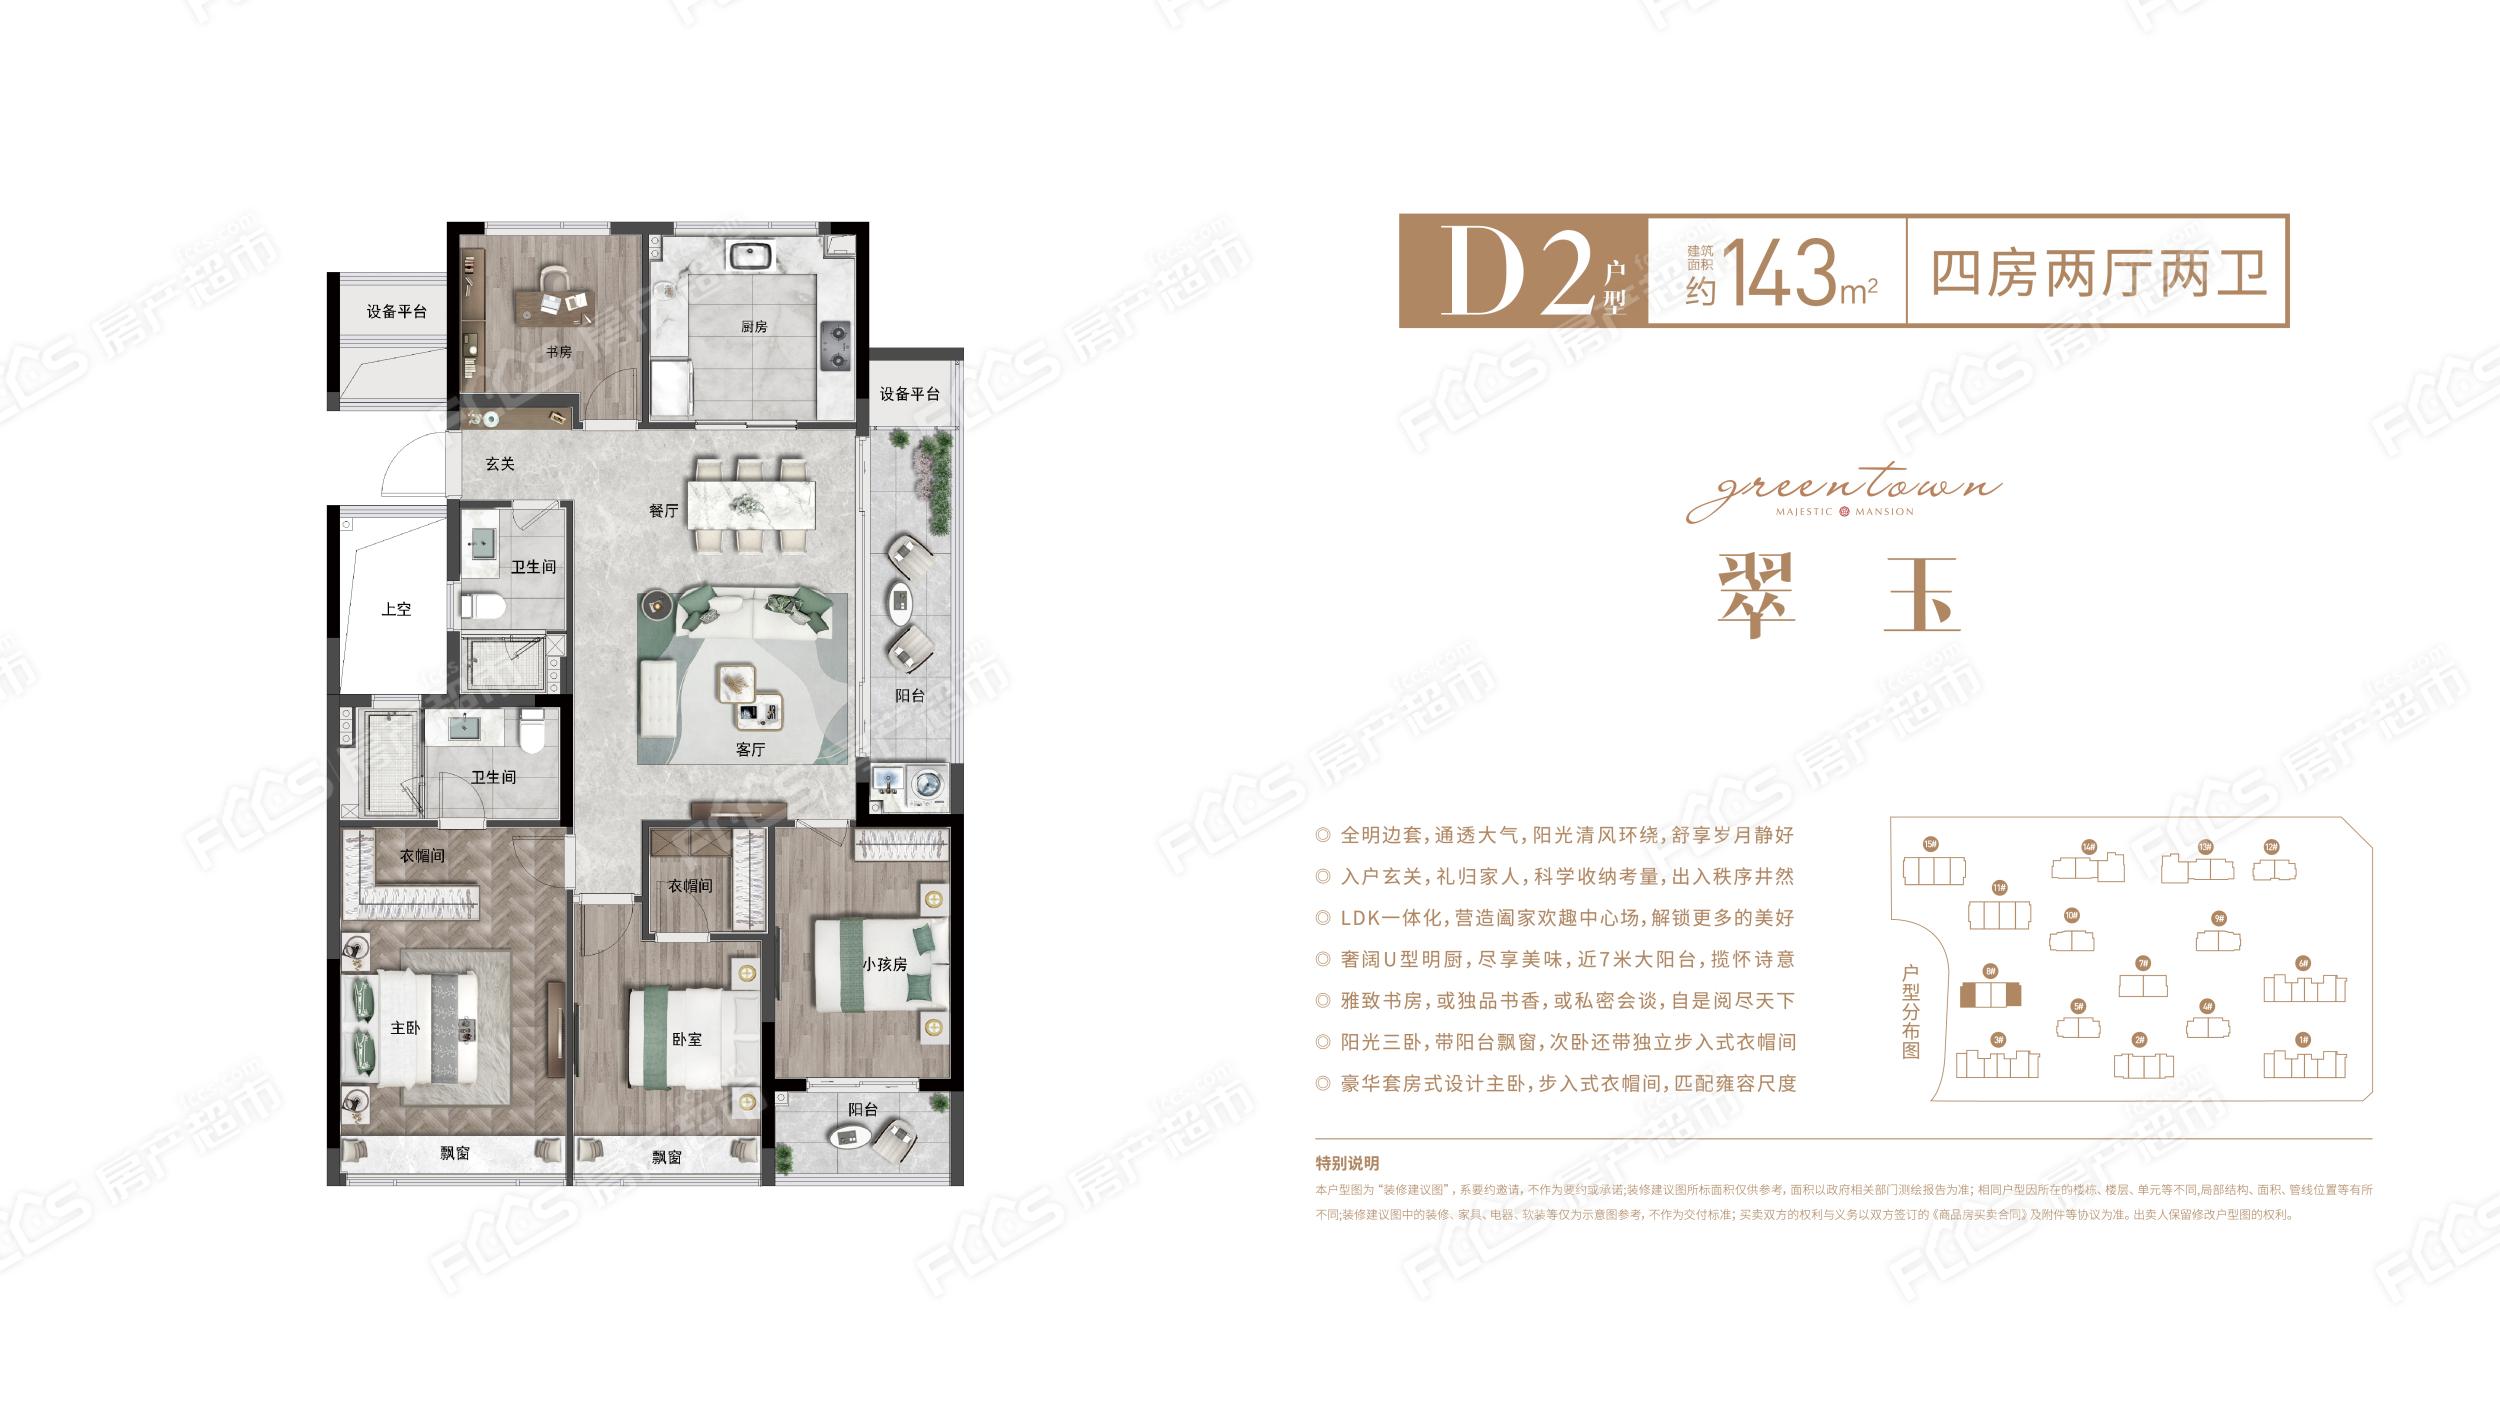 绿城锦玉园d2户型143平米4室2厅2卫1阳台户型图,户型设计图大全,户型